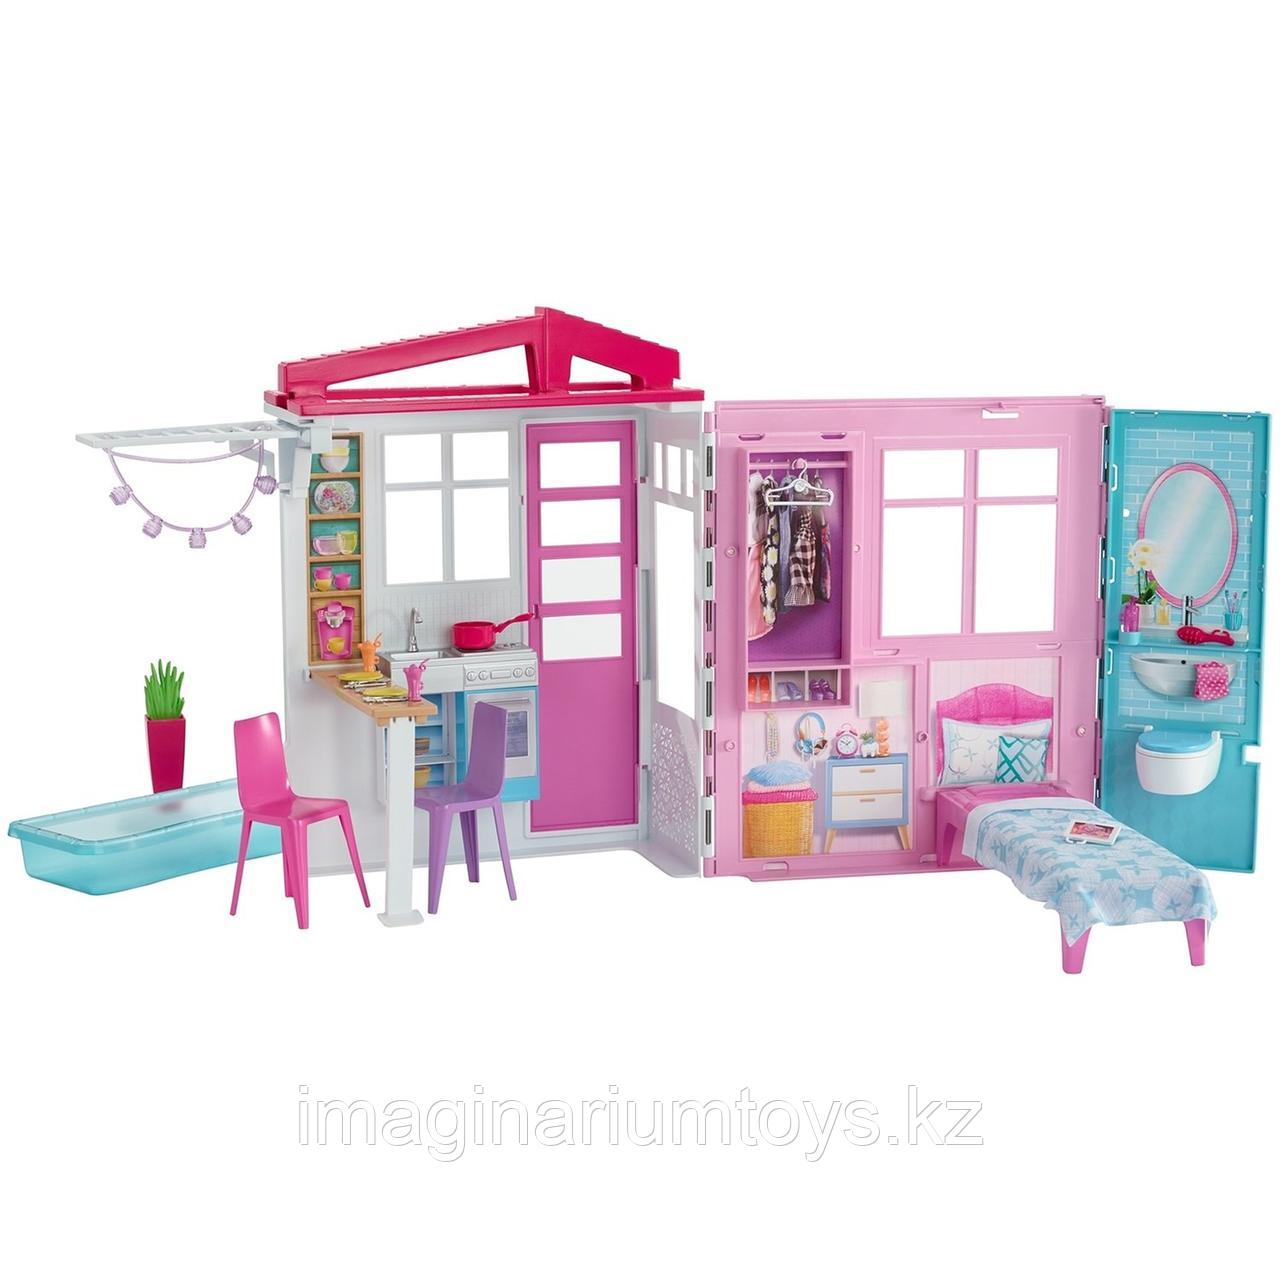 Barbie кукольный дом Барби FXG54, фото 1